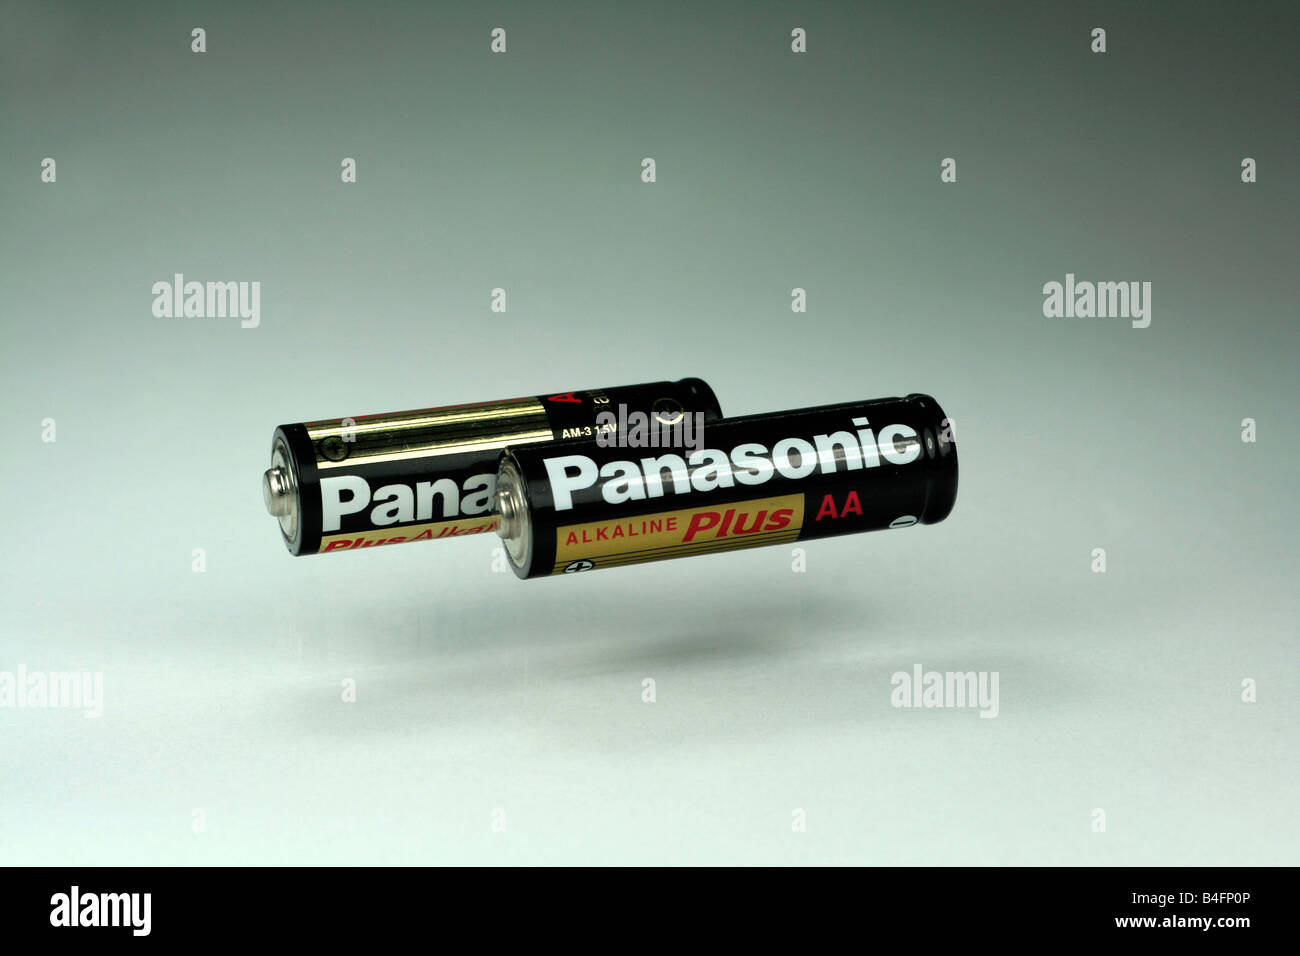 Panasonic alkaline plus AA batteries Stock Photo